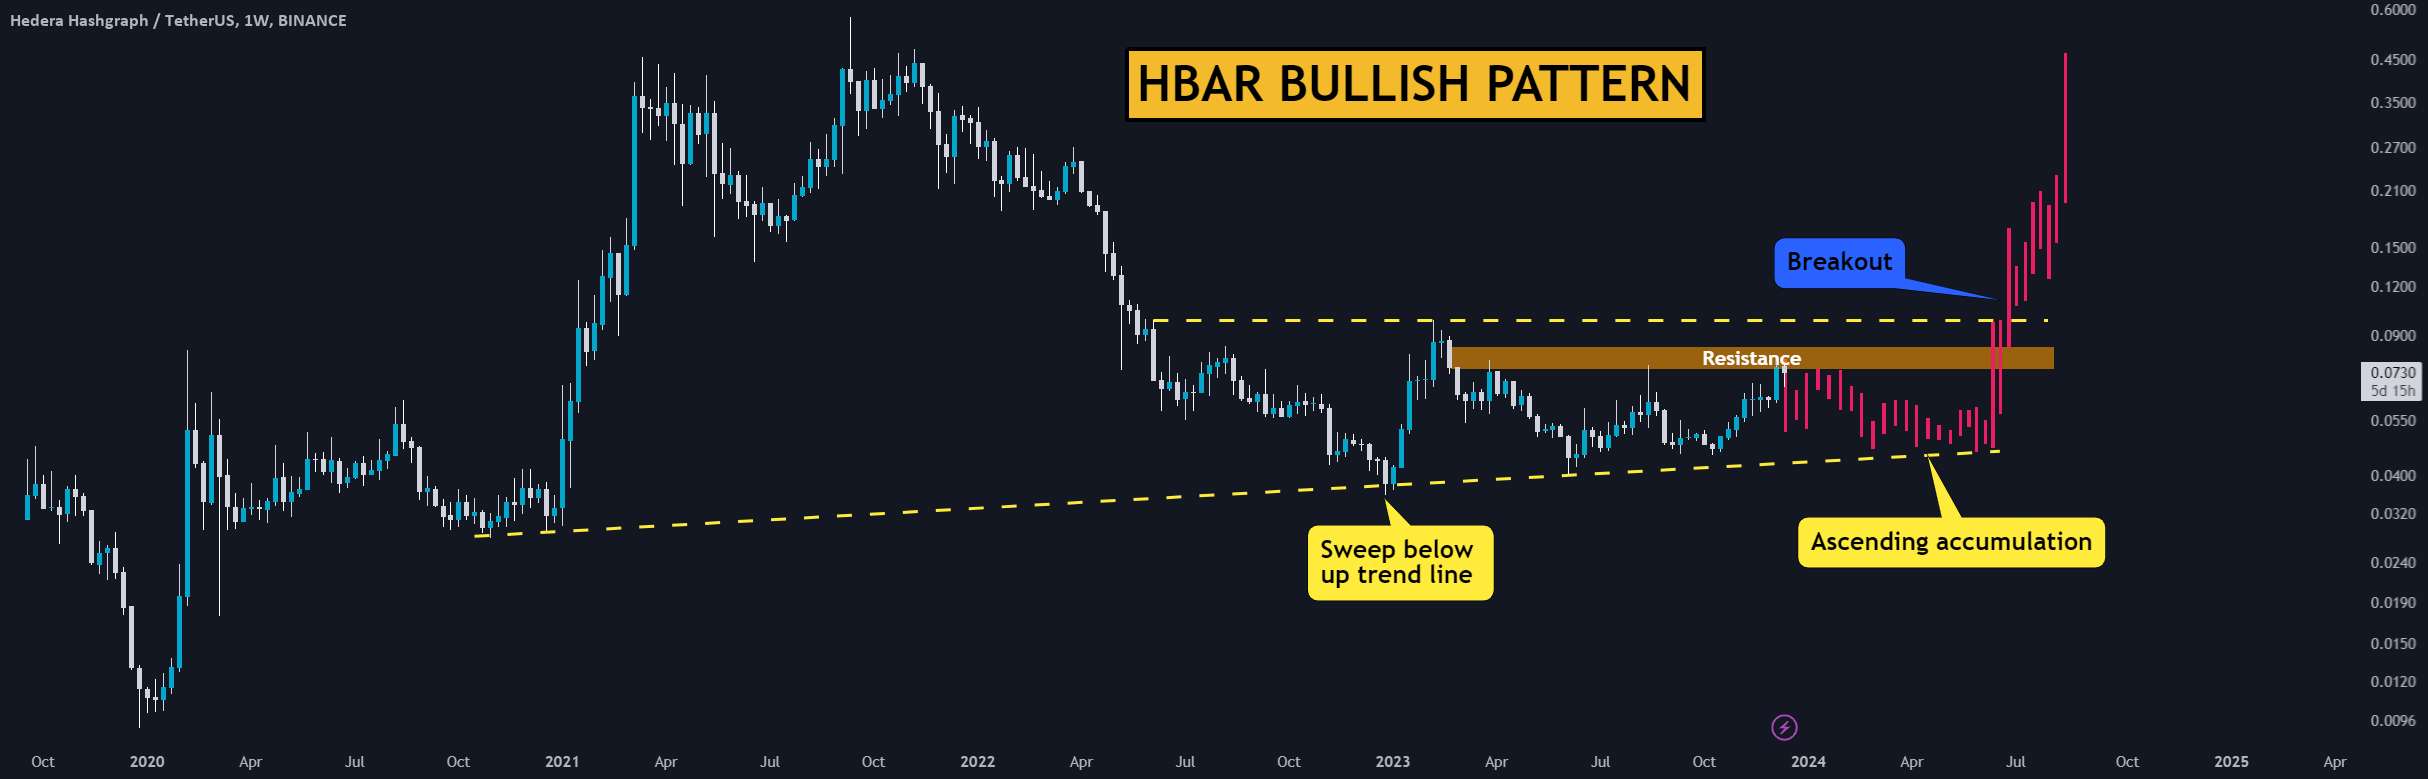  تحلیل هدرا هشگراف - HBAR: 0.1 دلار به زودی! برای Breakout آماده شوید